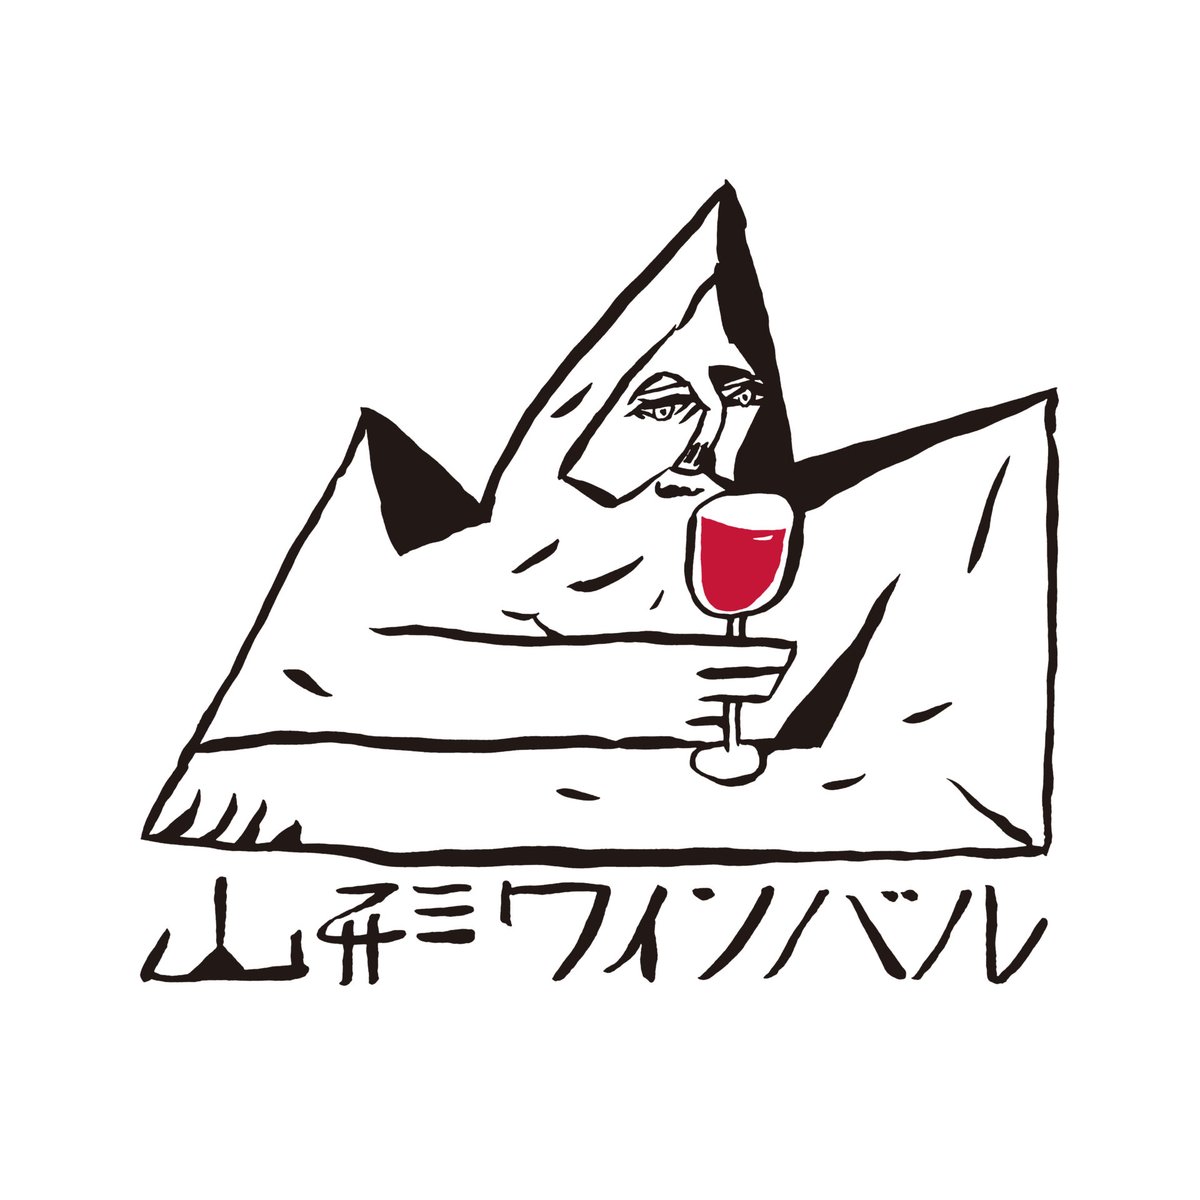 5月11日(土)、12日(日) 上山市において「山形ワインバル」が開催されます！
かみのやま産ブドウを使用したワインや、山形県内外の個性豊かなワインが楽しめる東北最大級のワインイベントです。
温泉城下町で飲んで食べて笑って、ワインを存分にお楽しみください。
yamagatawinebal.jp